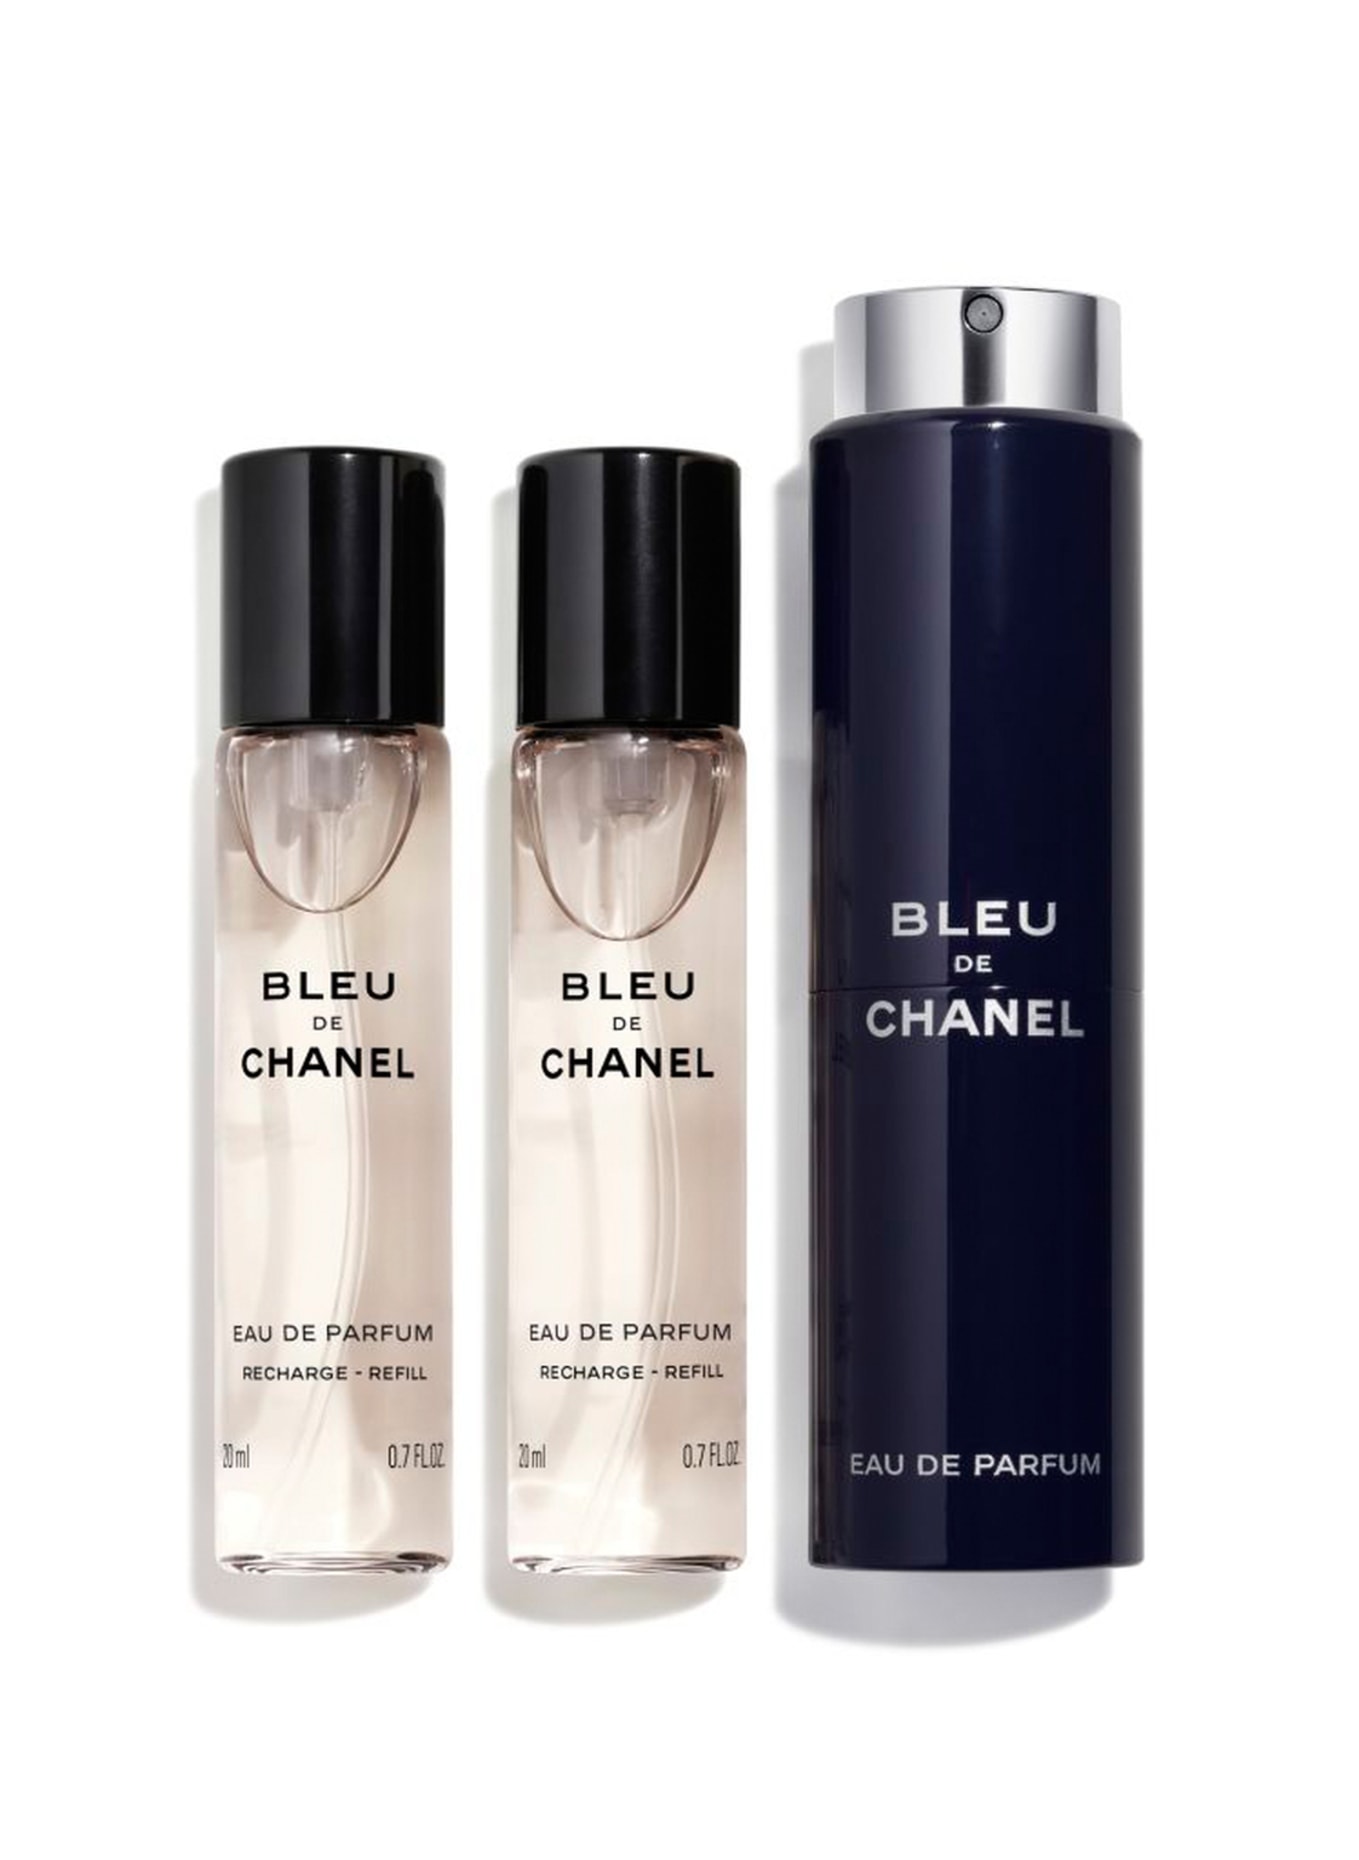 Bleu De Chanel Parfum By Chanel